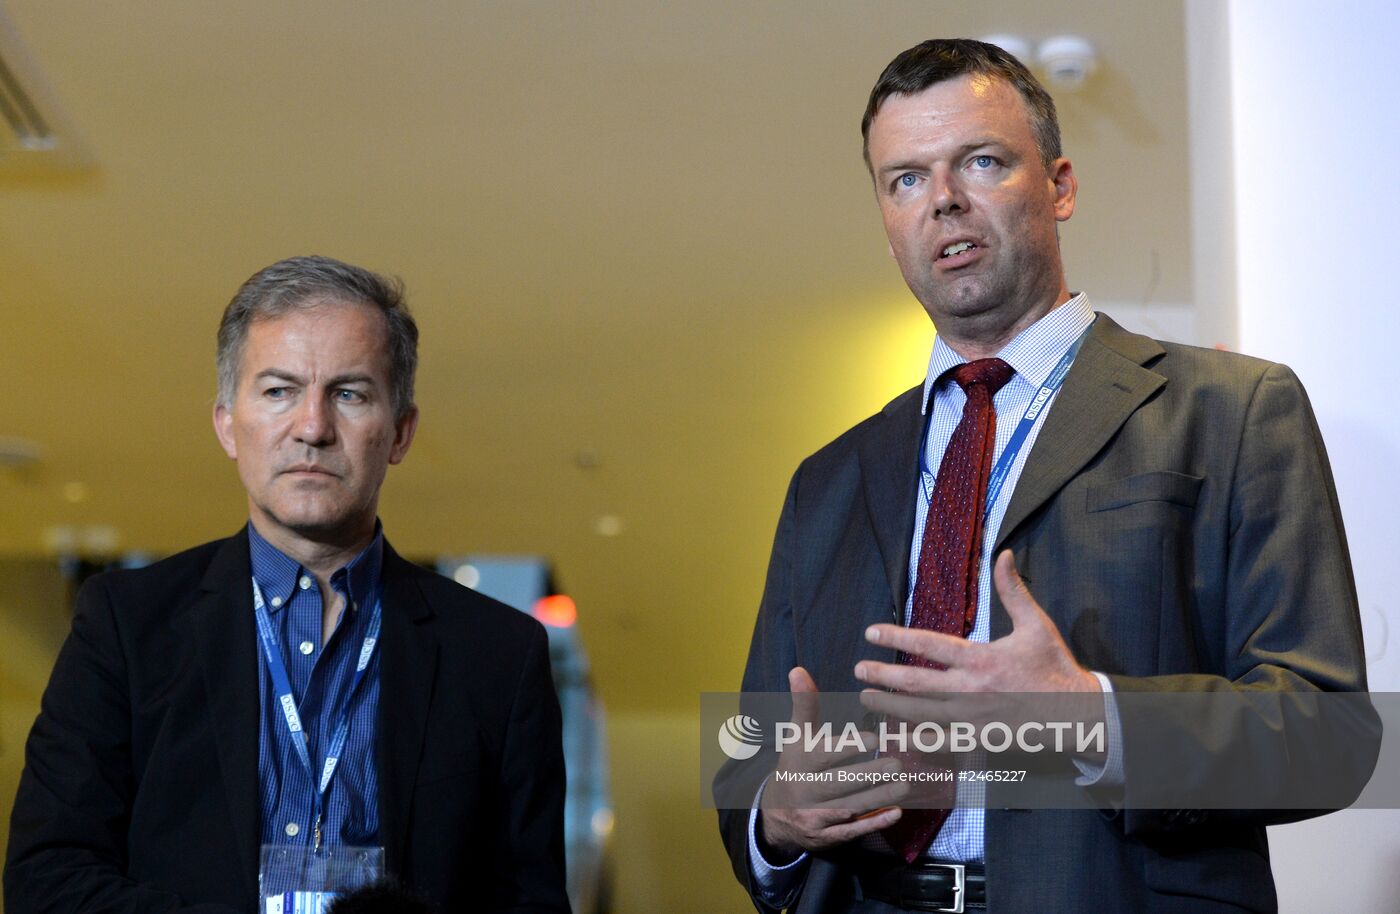 Пресс-конференция членов миссии ОБСЕ в Донецке